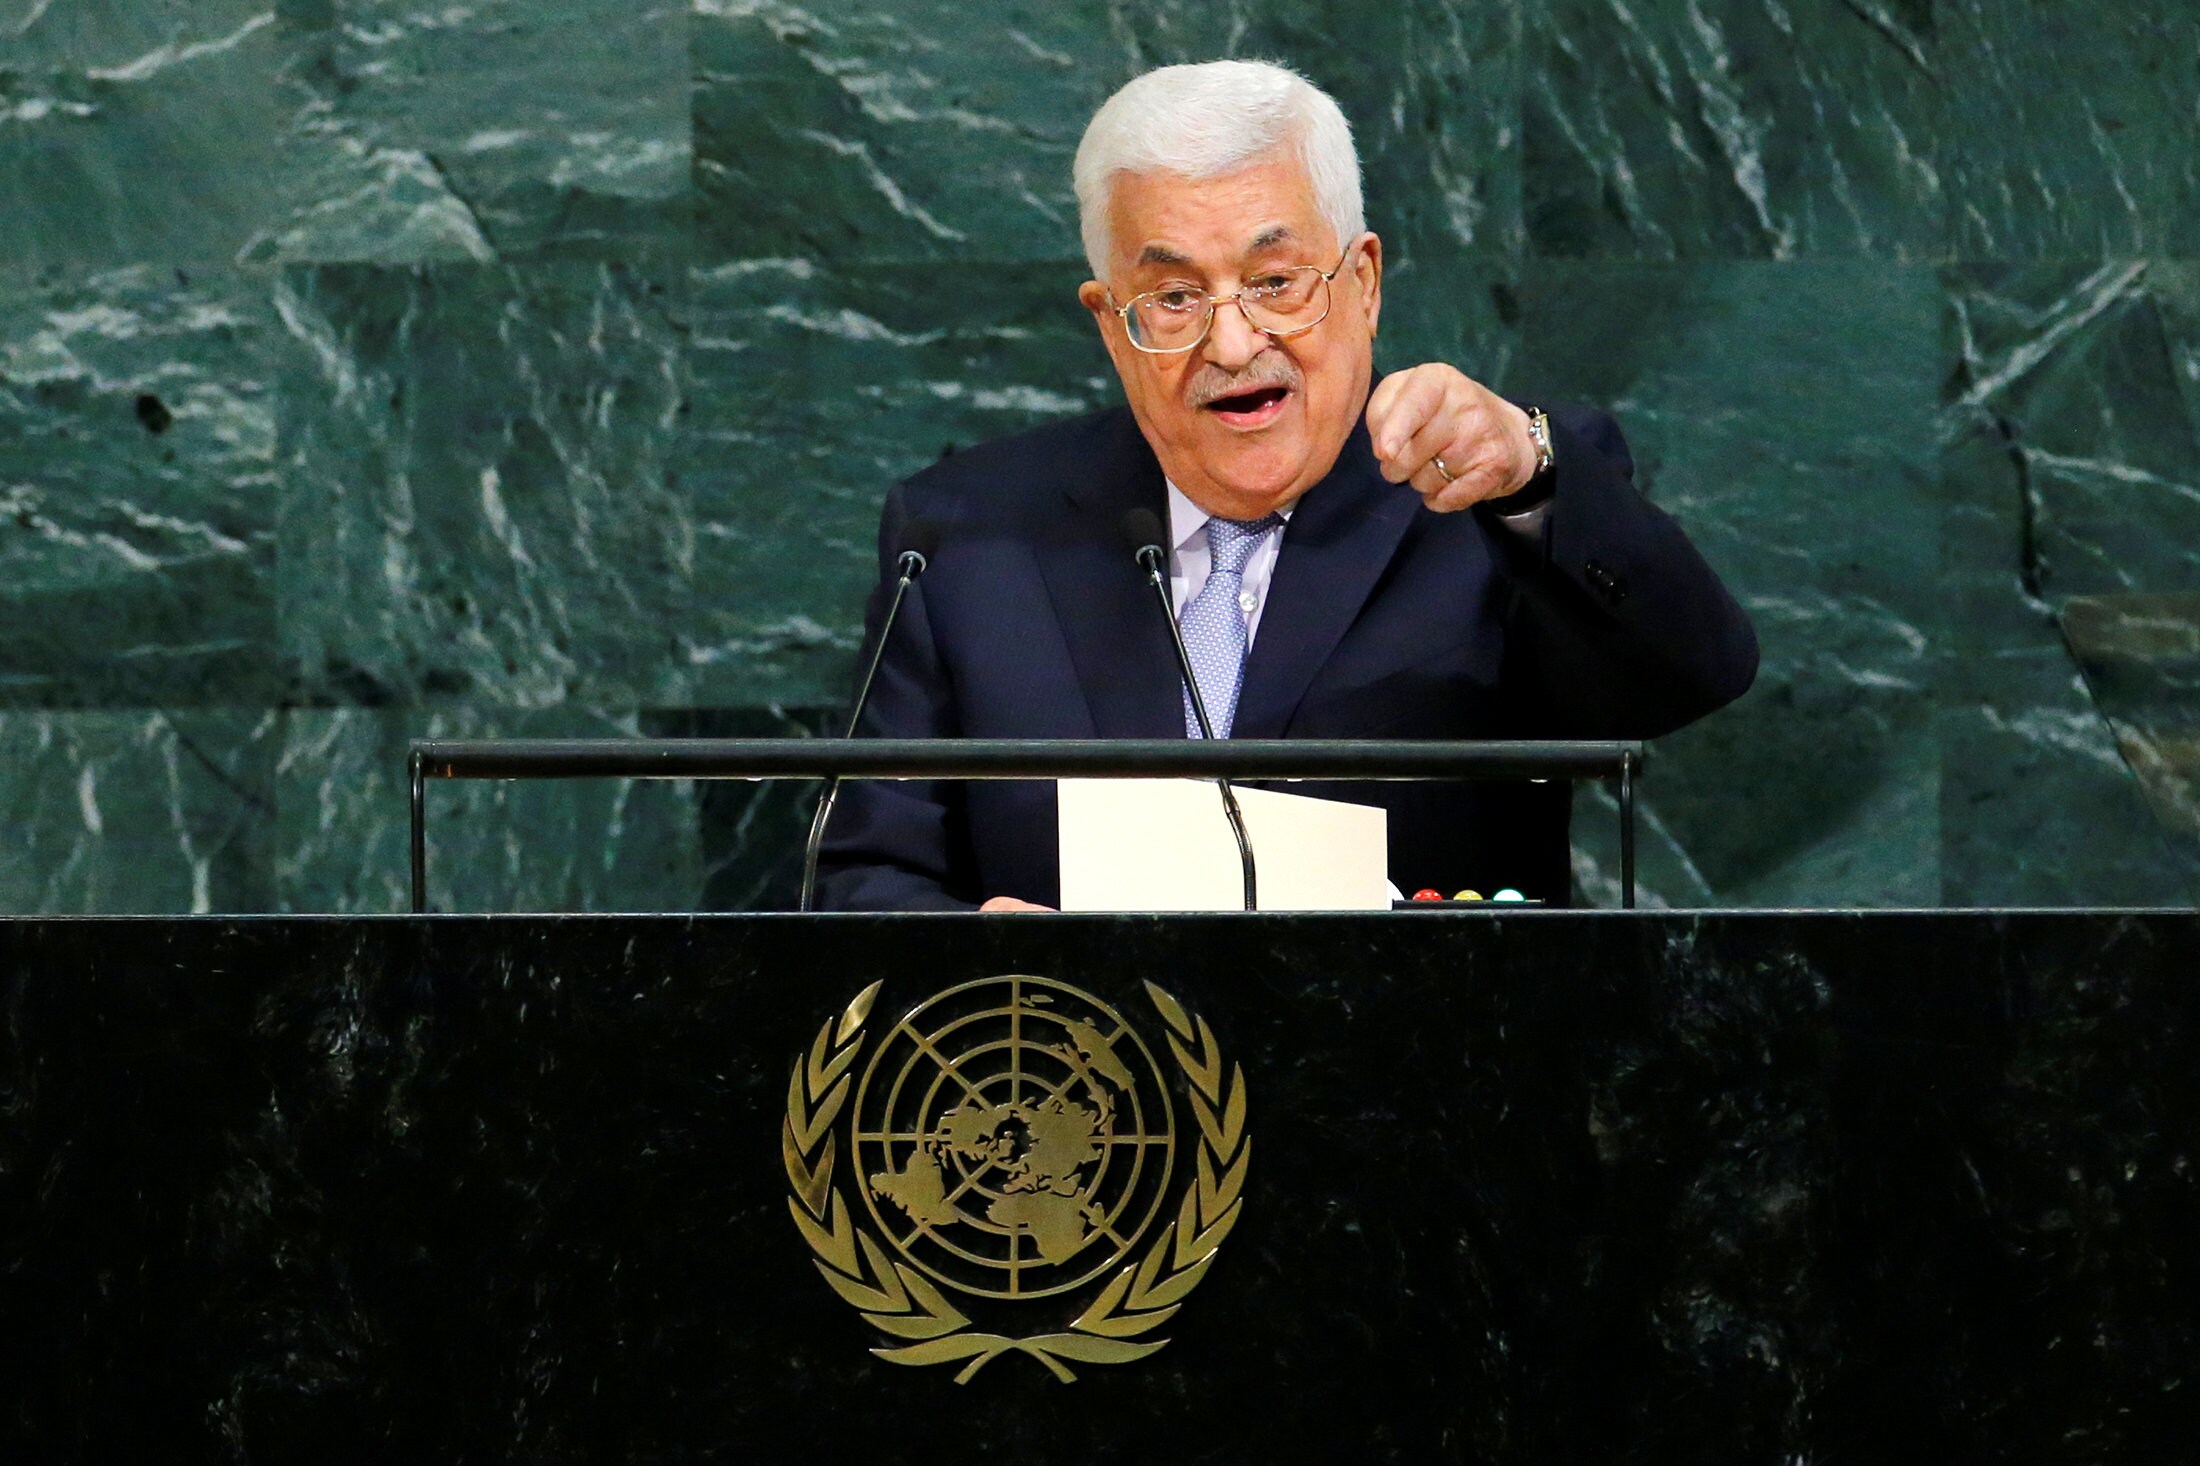 Abbas vraagt VN om "binnen vooropgestelde termijn" einde te maken aan Israëlische bezetting